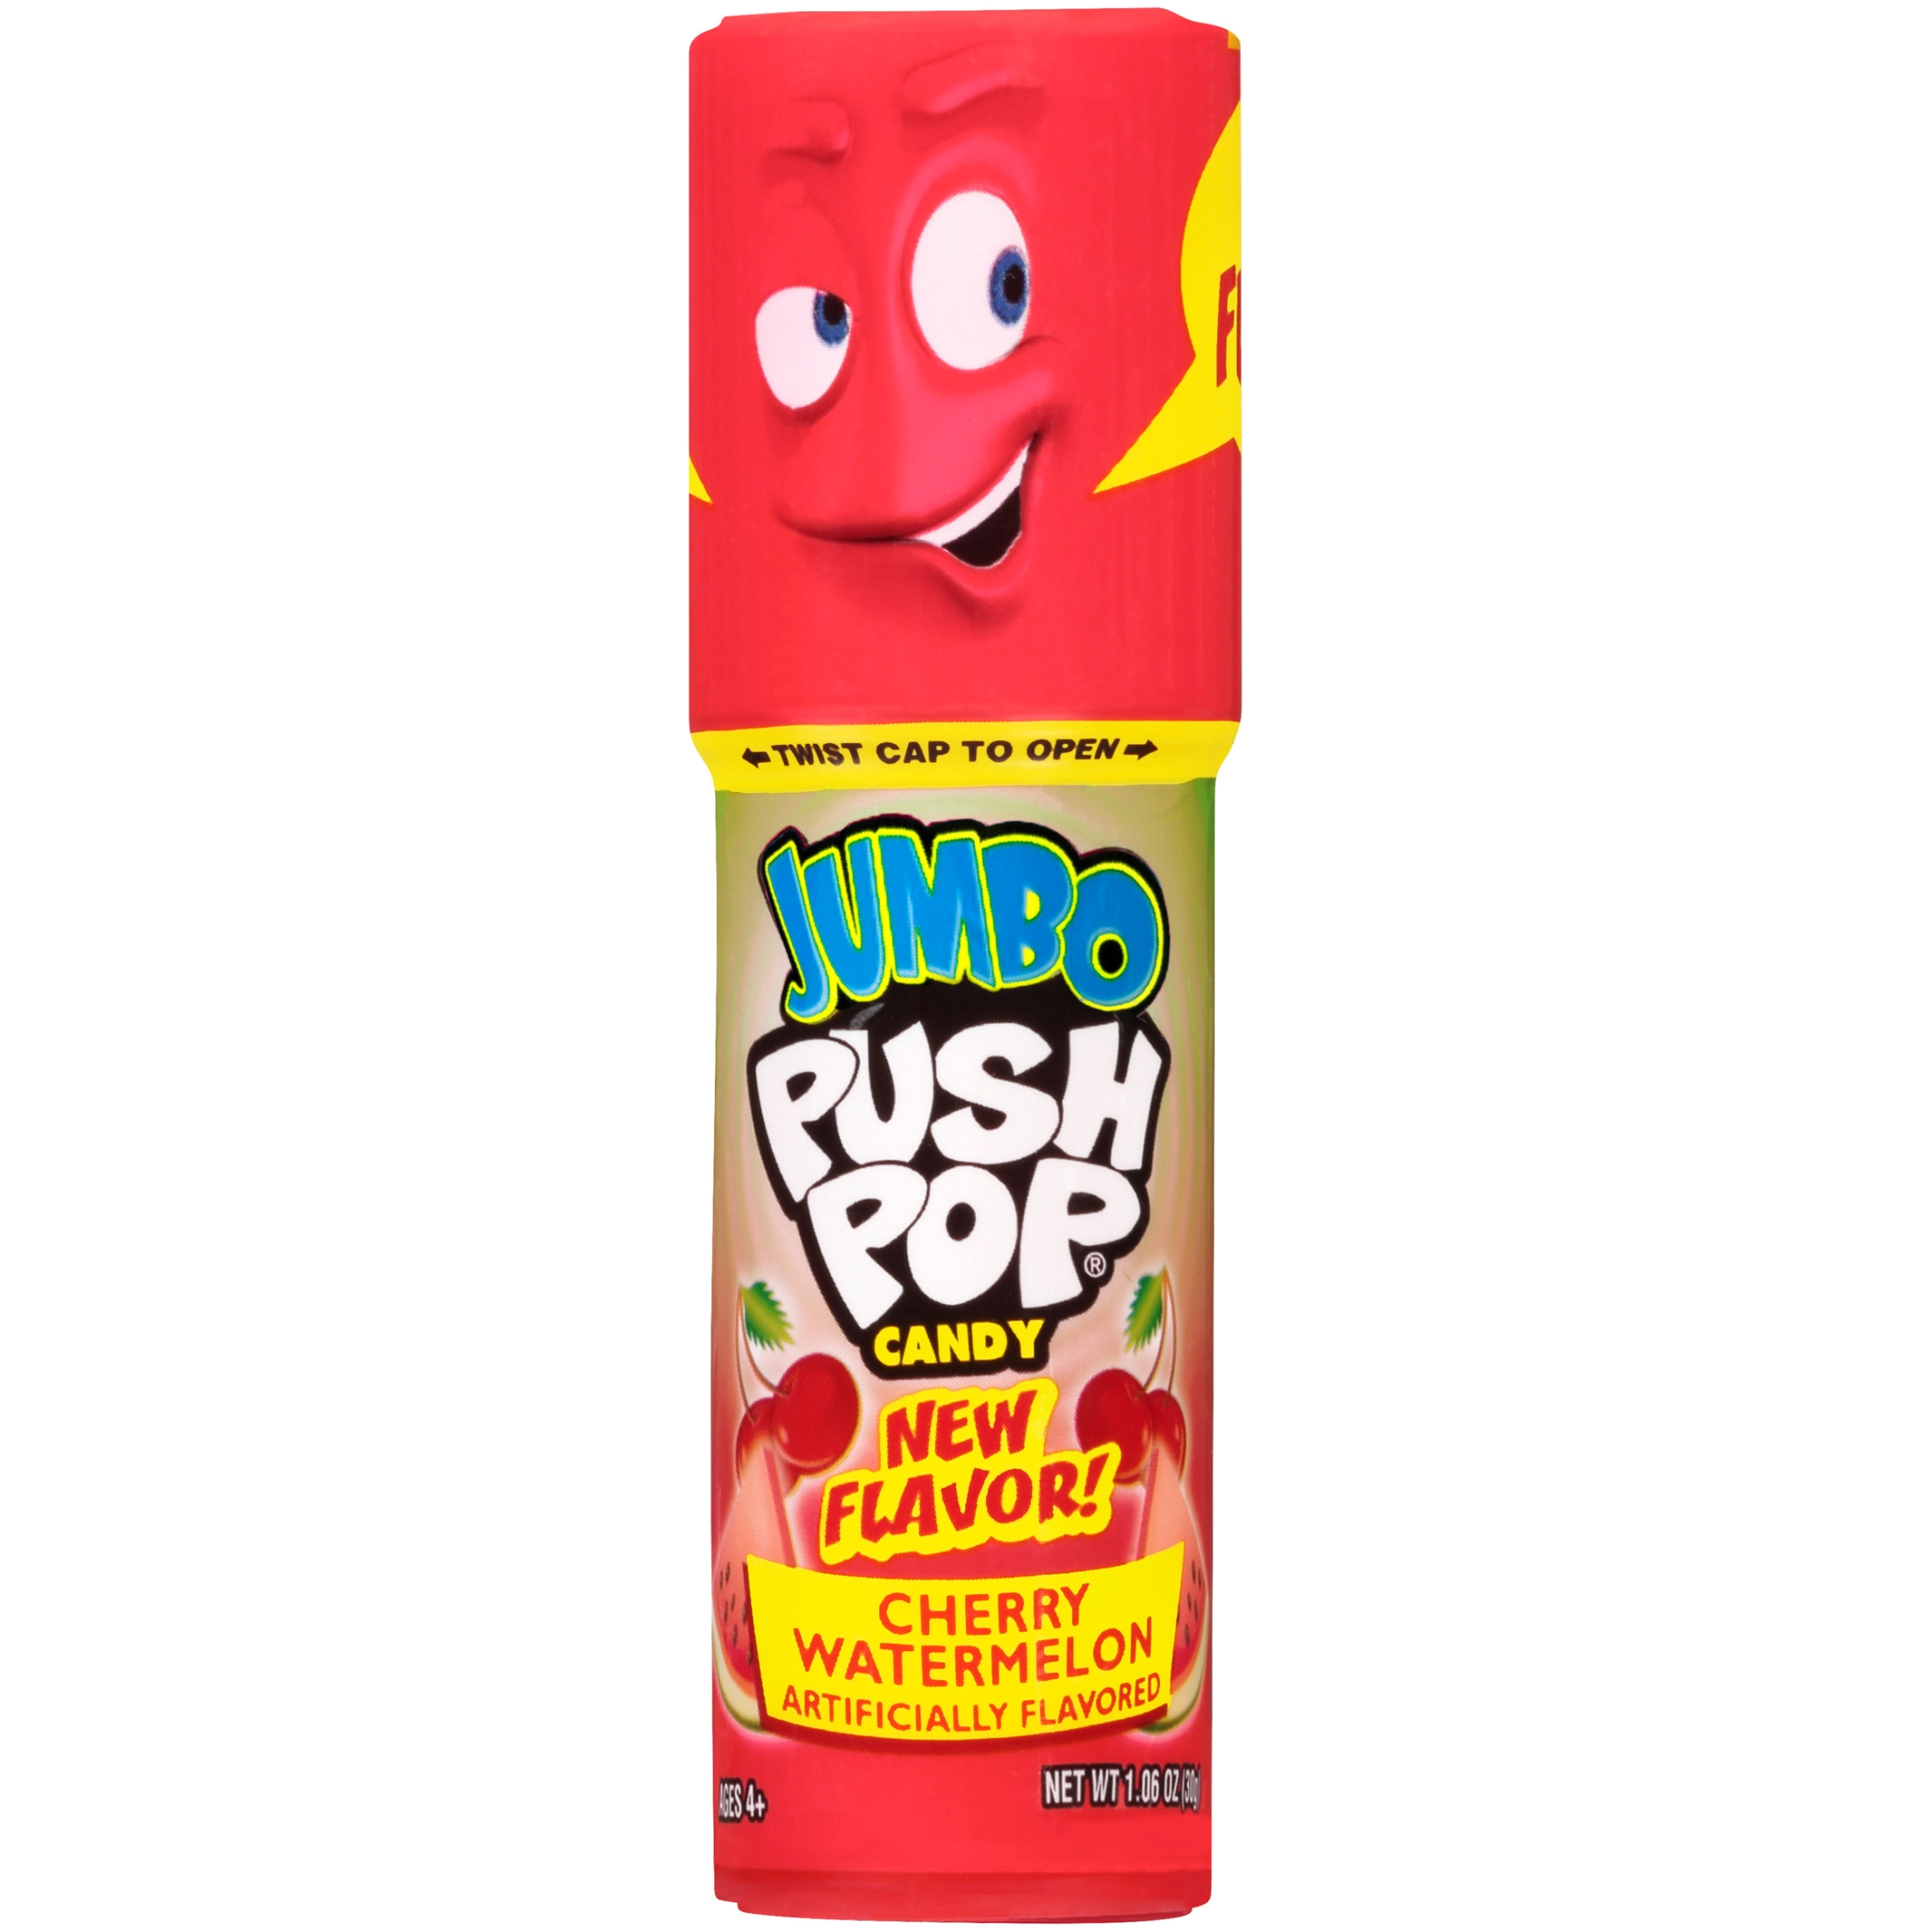 Jumbo Push Pop,Gluten-Free, Assorted Flavor Lollipop, 1.06 oz, 1 Count - image 1 of 8